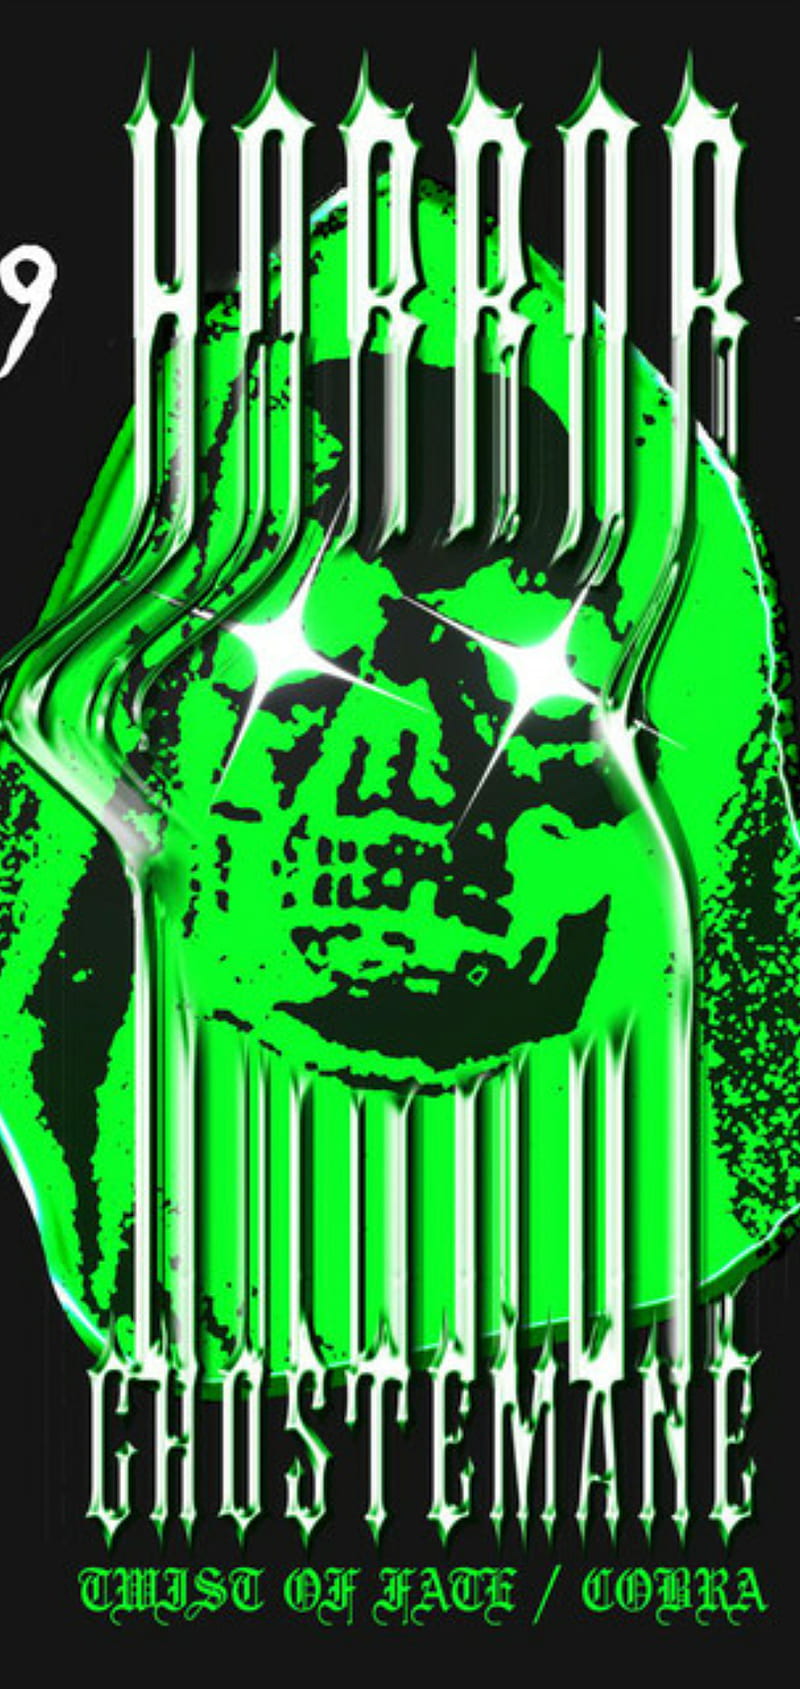 Download Ghostemane Monstrous Teeth Wallpaper